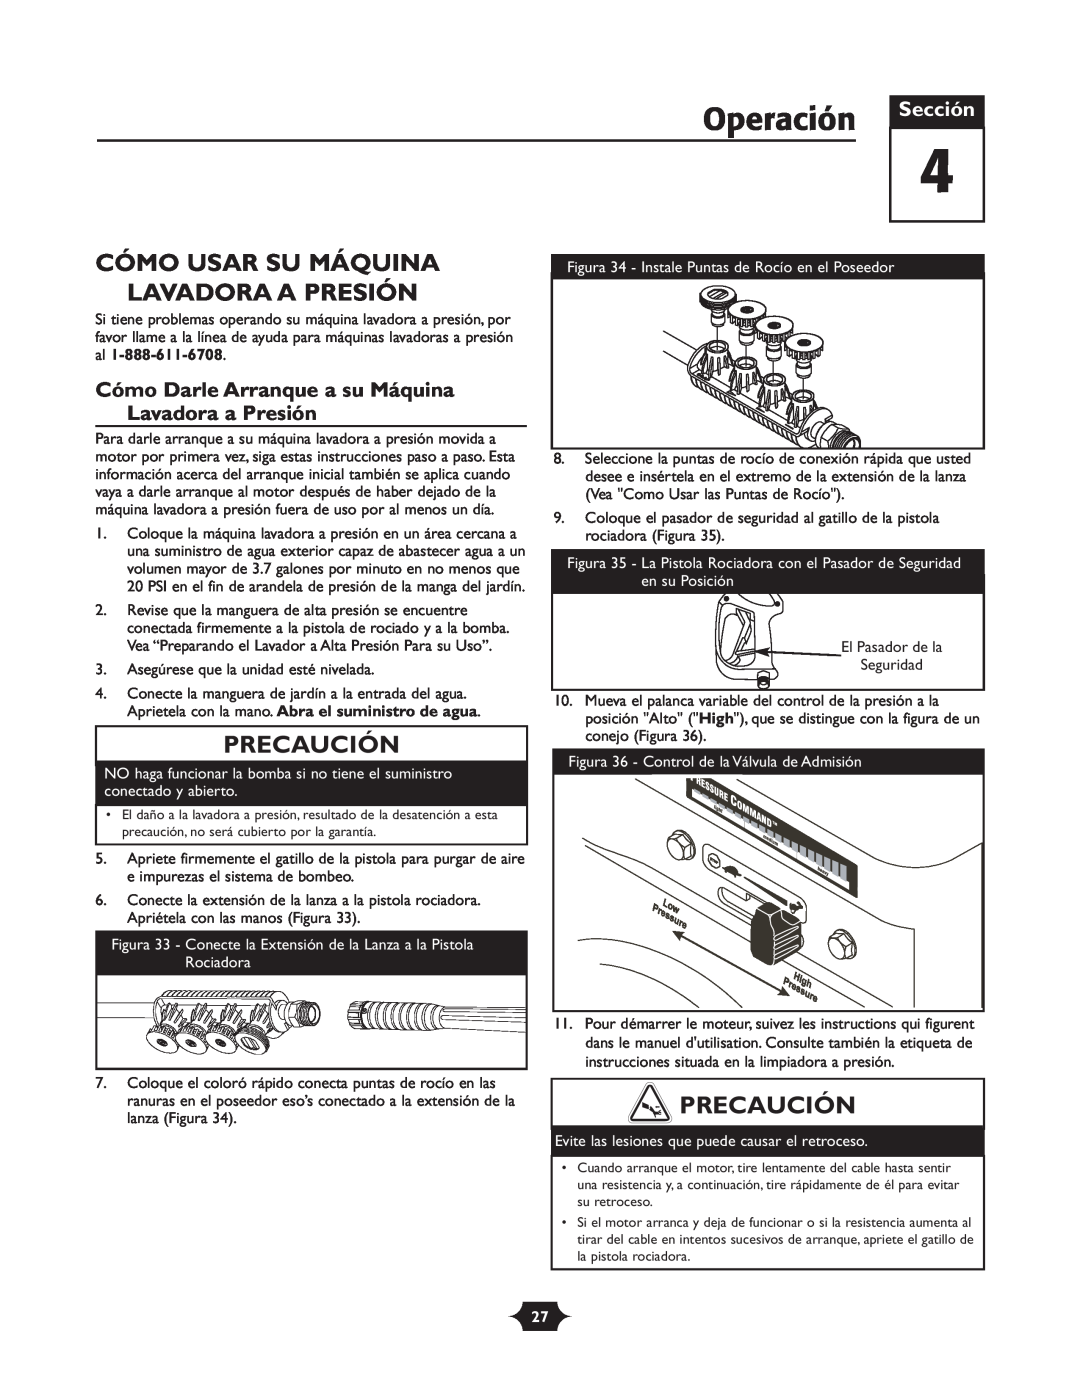 Briggs & Stratton 20209 owner manual Operación, Cómo Usar Su Máquina Lavadora A Presión, Precaución, Sección 